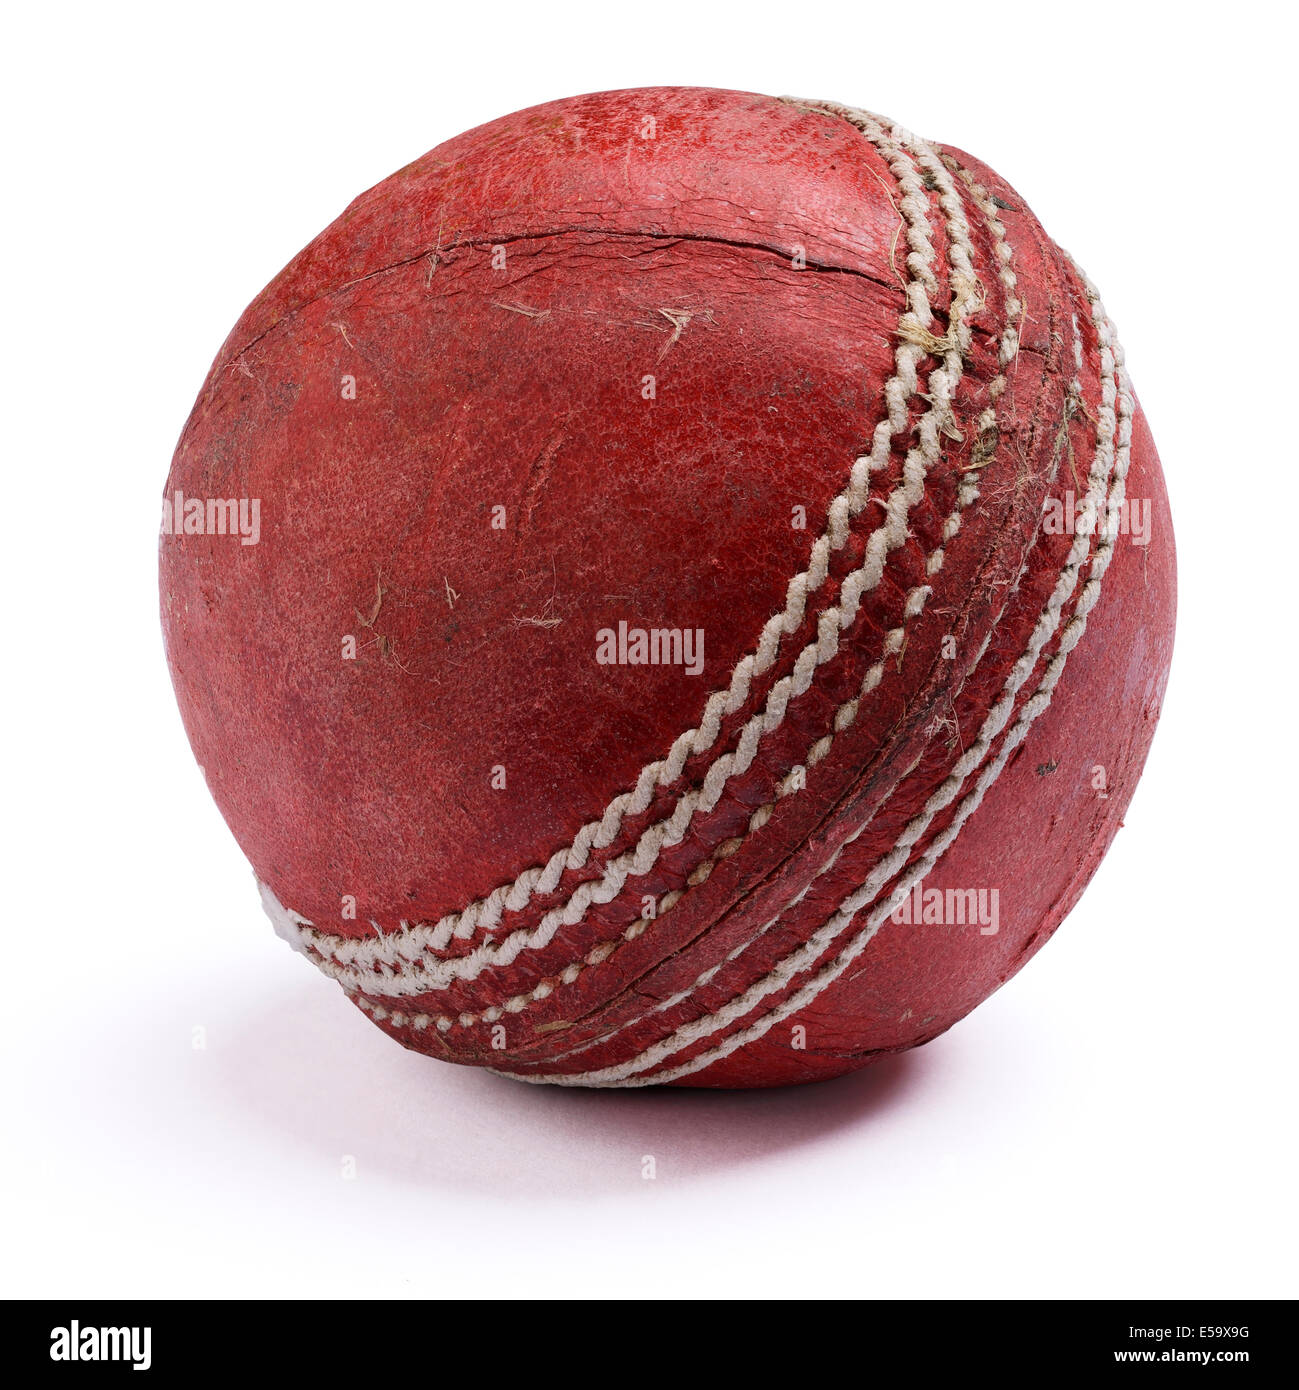 Viejos desgastados de cuero rojo bola de críquet Foto de stock